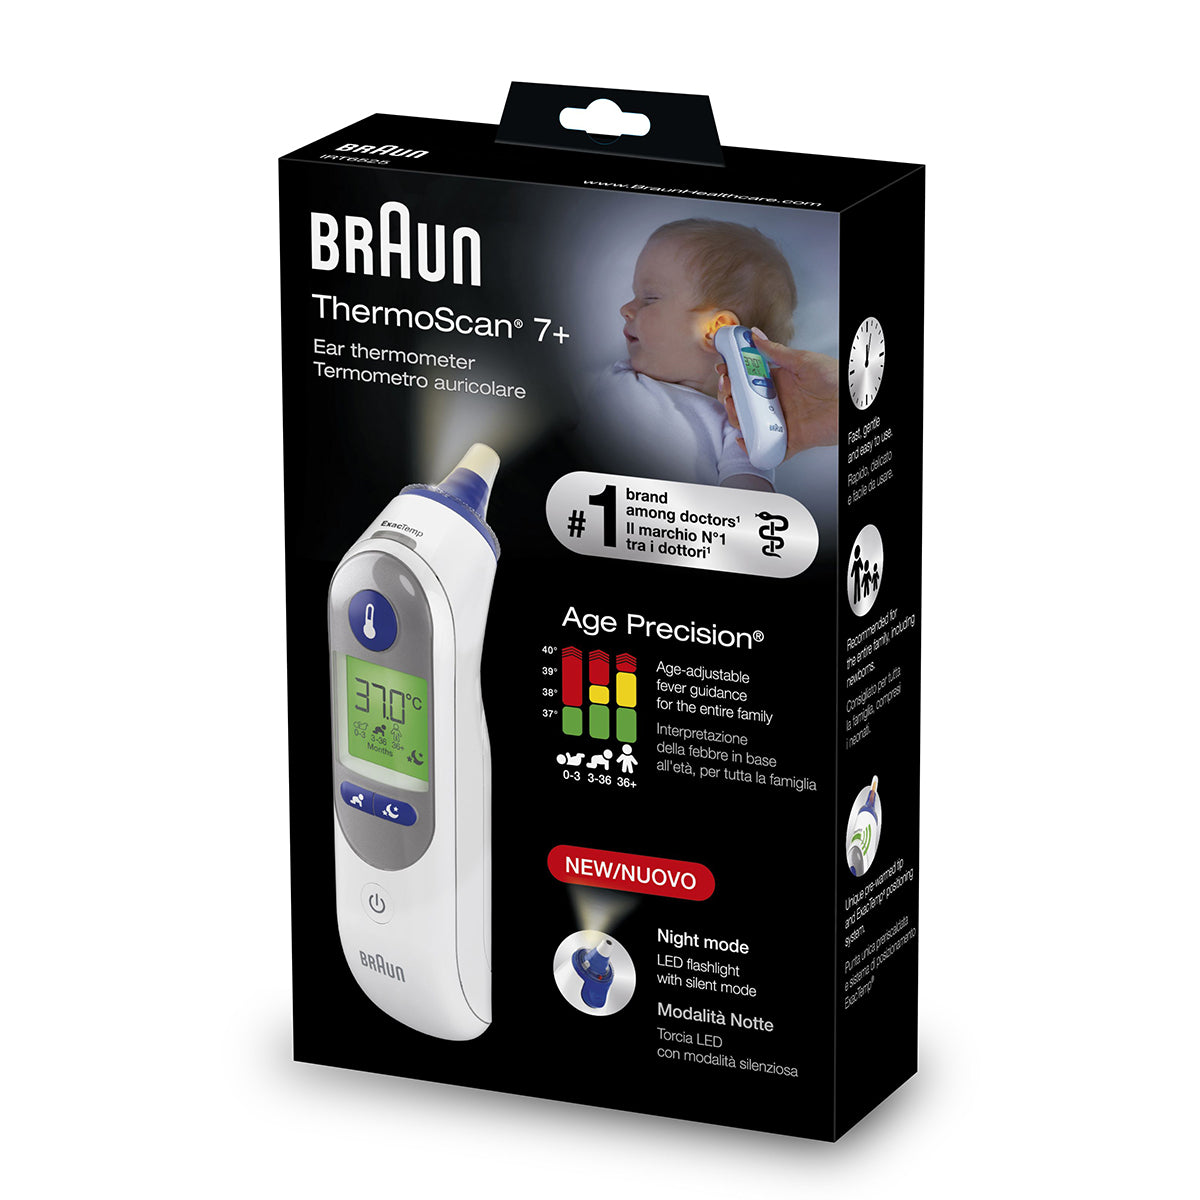 Deze Braun thermoscan luxe is een uitvinding voor de hele familie! Deze thermometer heeft een “instelbare leeftijd”, zodat elke temperatuurmeting nauwkeurig en afgestemd is op de juiste leeftijd. VanZus